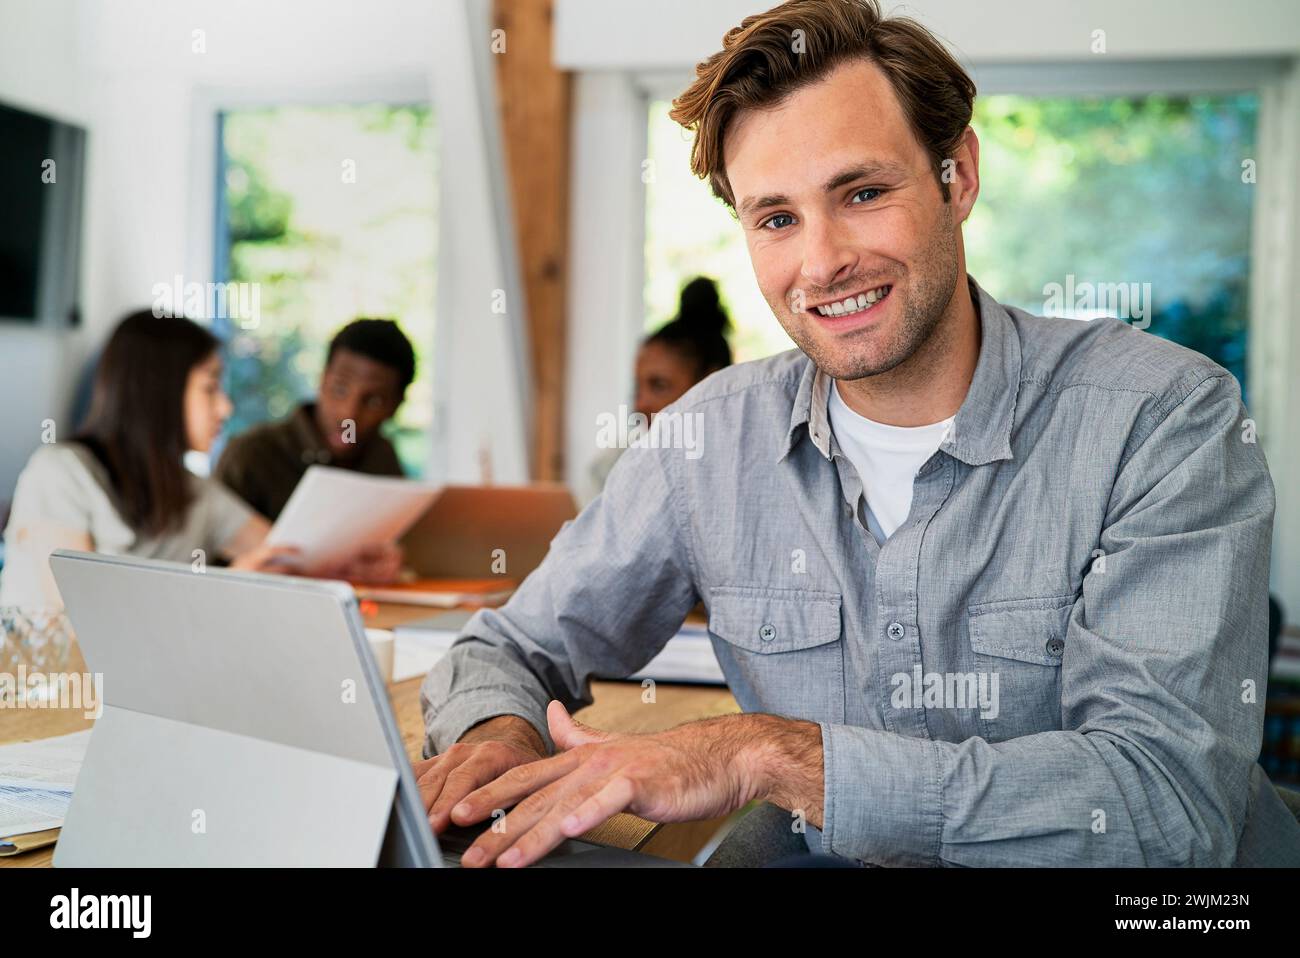 Männlicher Geschäftsadministrator, der während seiner Arbeit am Schreibtisch auf die Kamera schaut Stockfoto